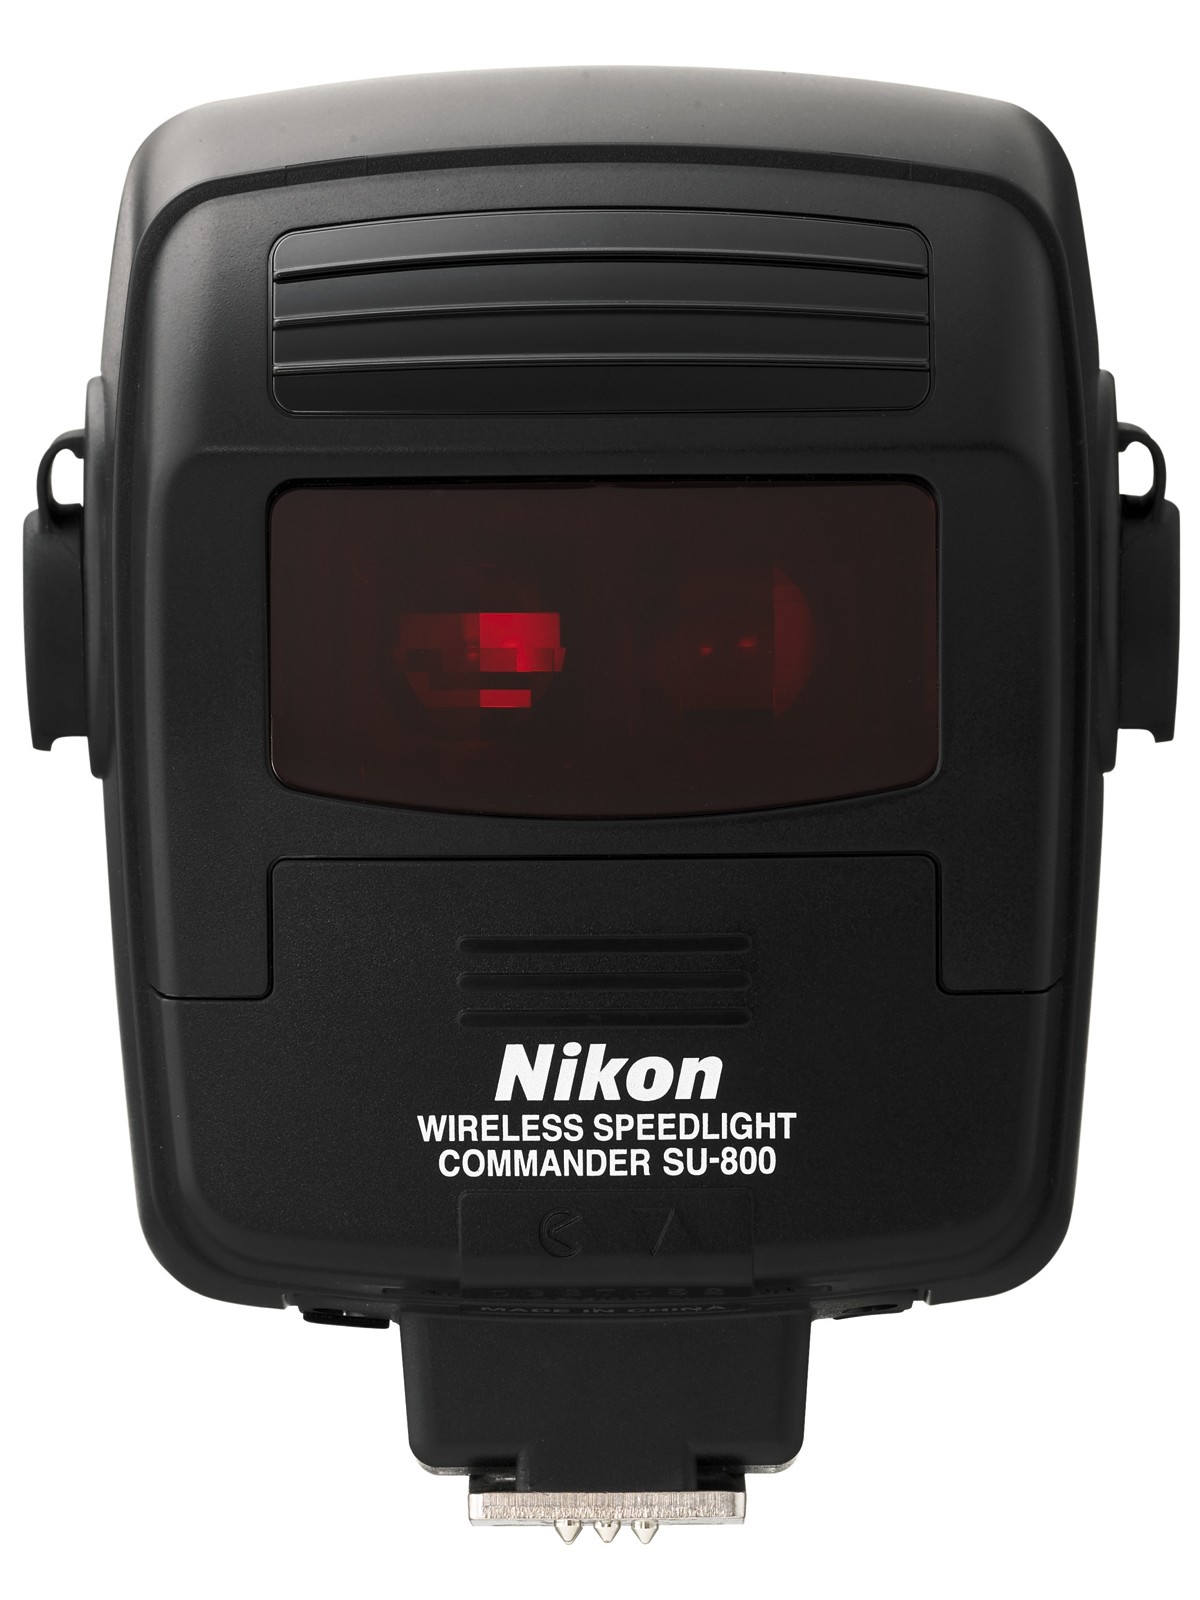 Nikon SU-800 Speedlite Commander